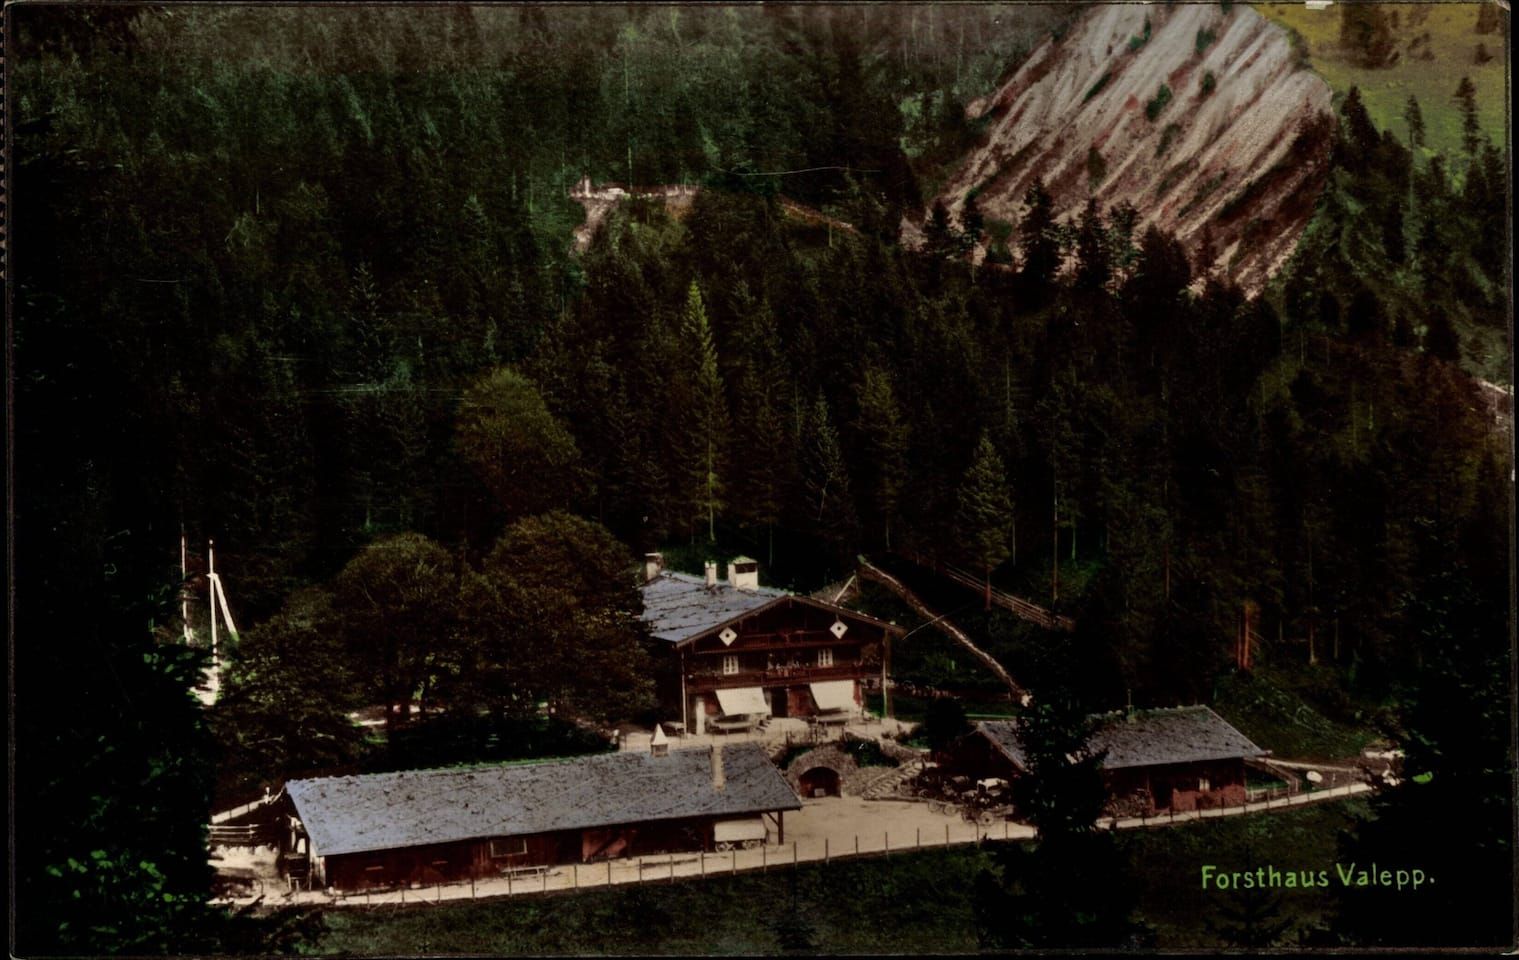 Schliersee, Forsthaus Valepp, Blick von oben auf drei Hütten *** Schliersee, foresters lodge Valepp, view from above to